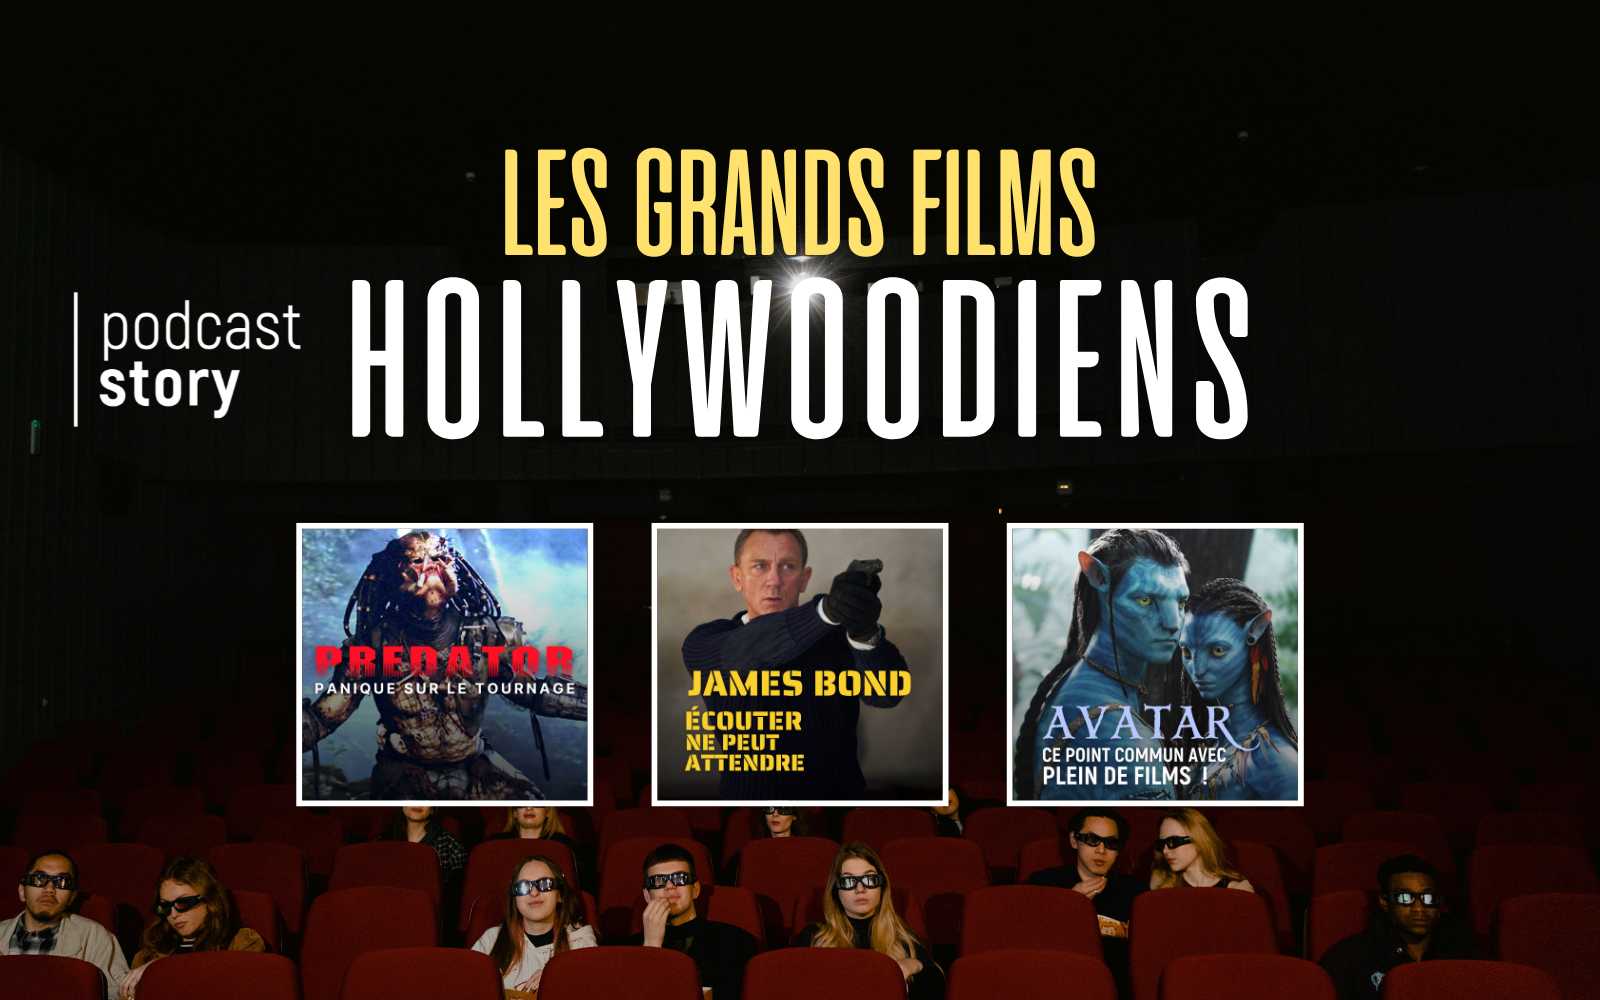 LES GRANDS FILMS HOLLYWOODIENS – La playlist